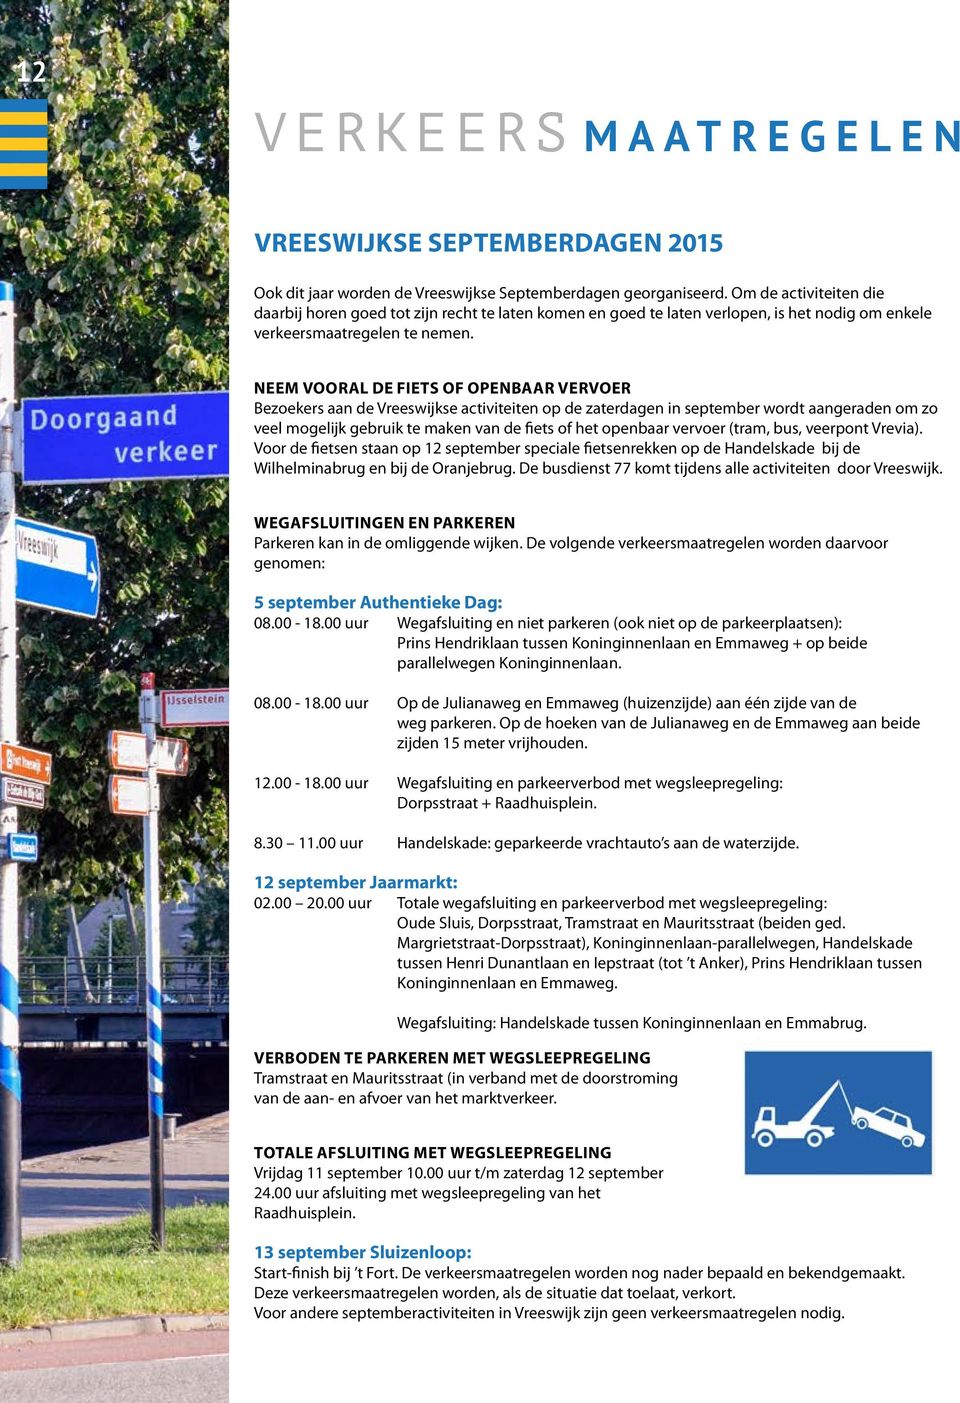 NEEM VOORAL DE FIETS OF OPENBAAR VERVOER Bezoekers aan de Vreeswijkse activiteiten op de zaterdagen in september wordt aangeraden om zo veel mogelijk gebruik te maken van de fiets of het openbaar